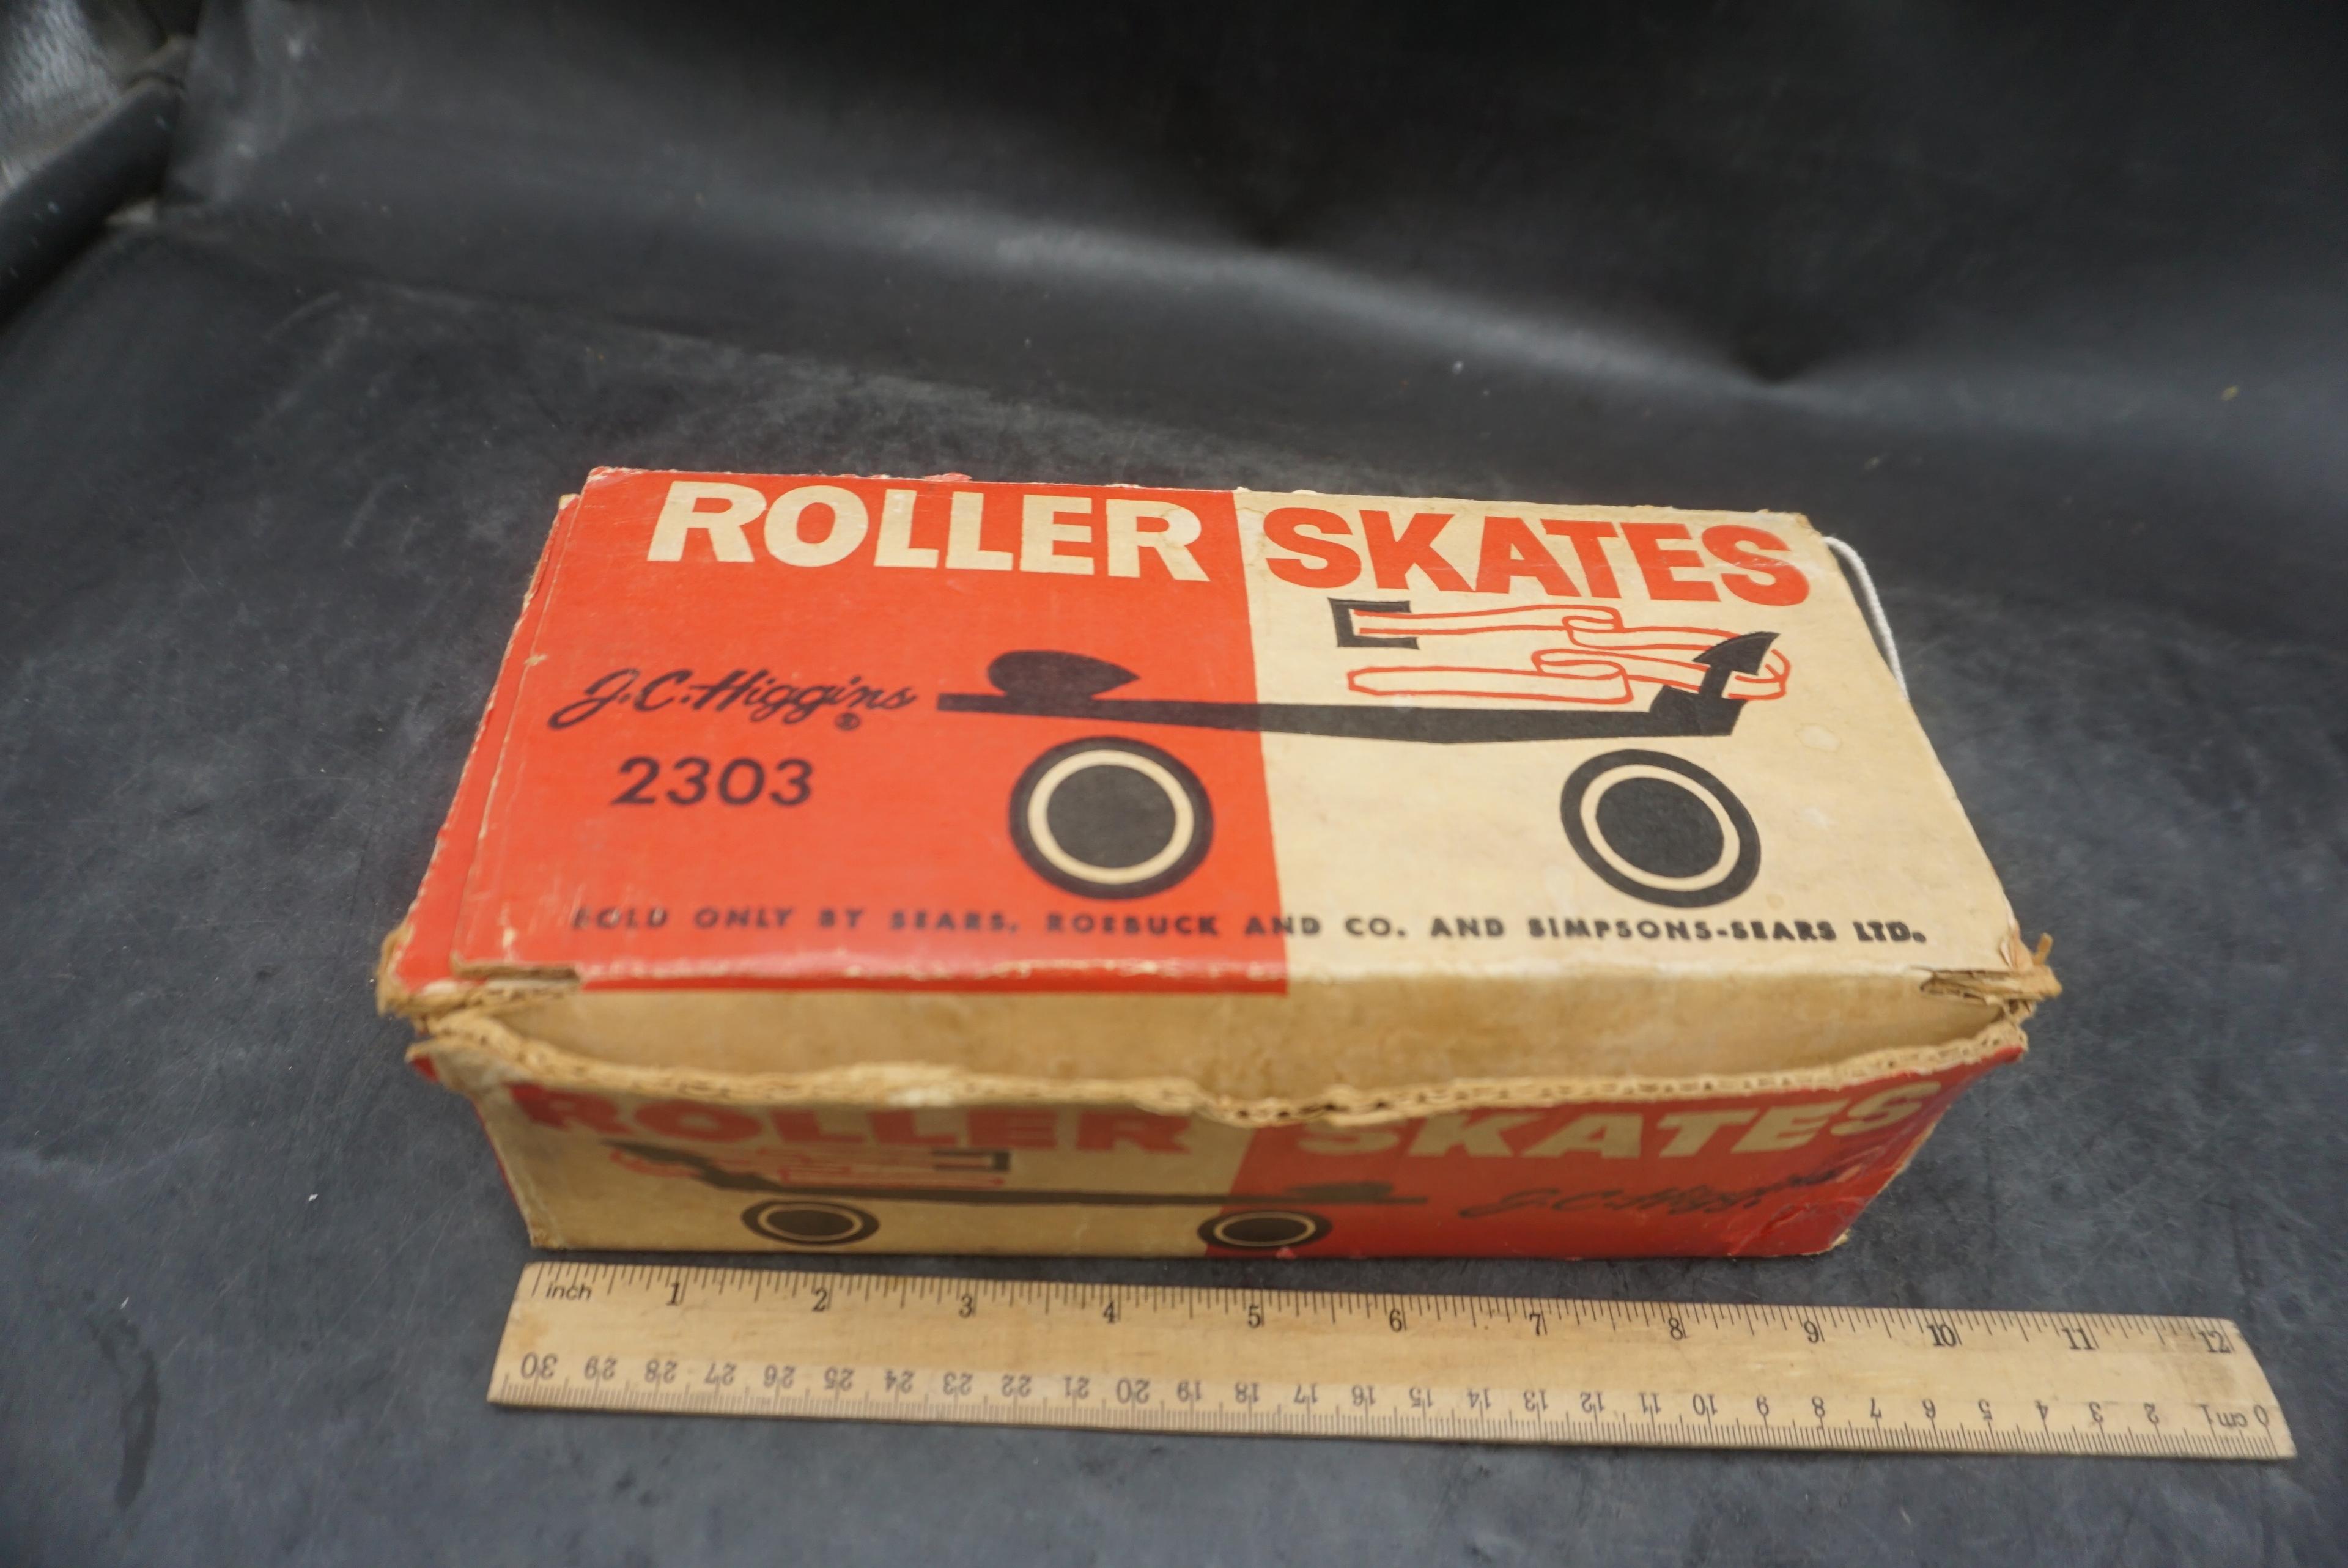 J.C. Higgins 2303 Roller Skates